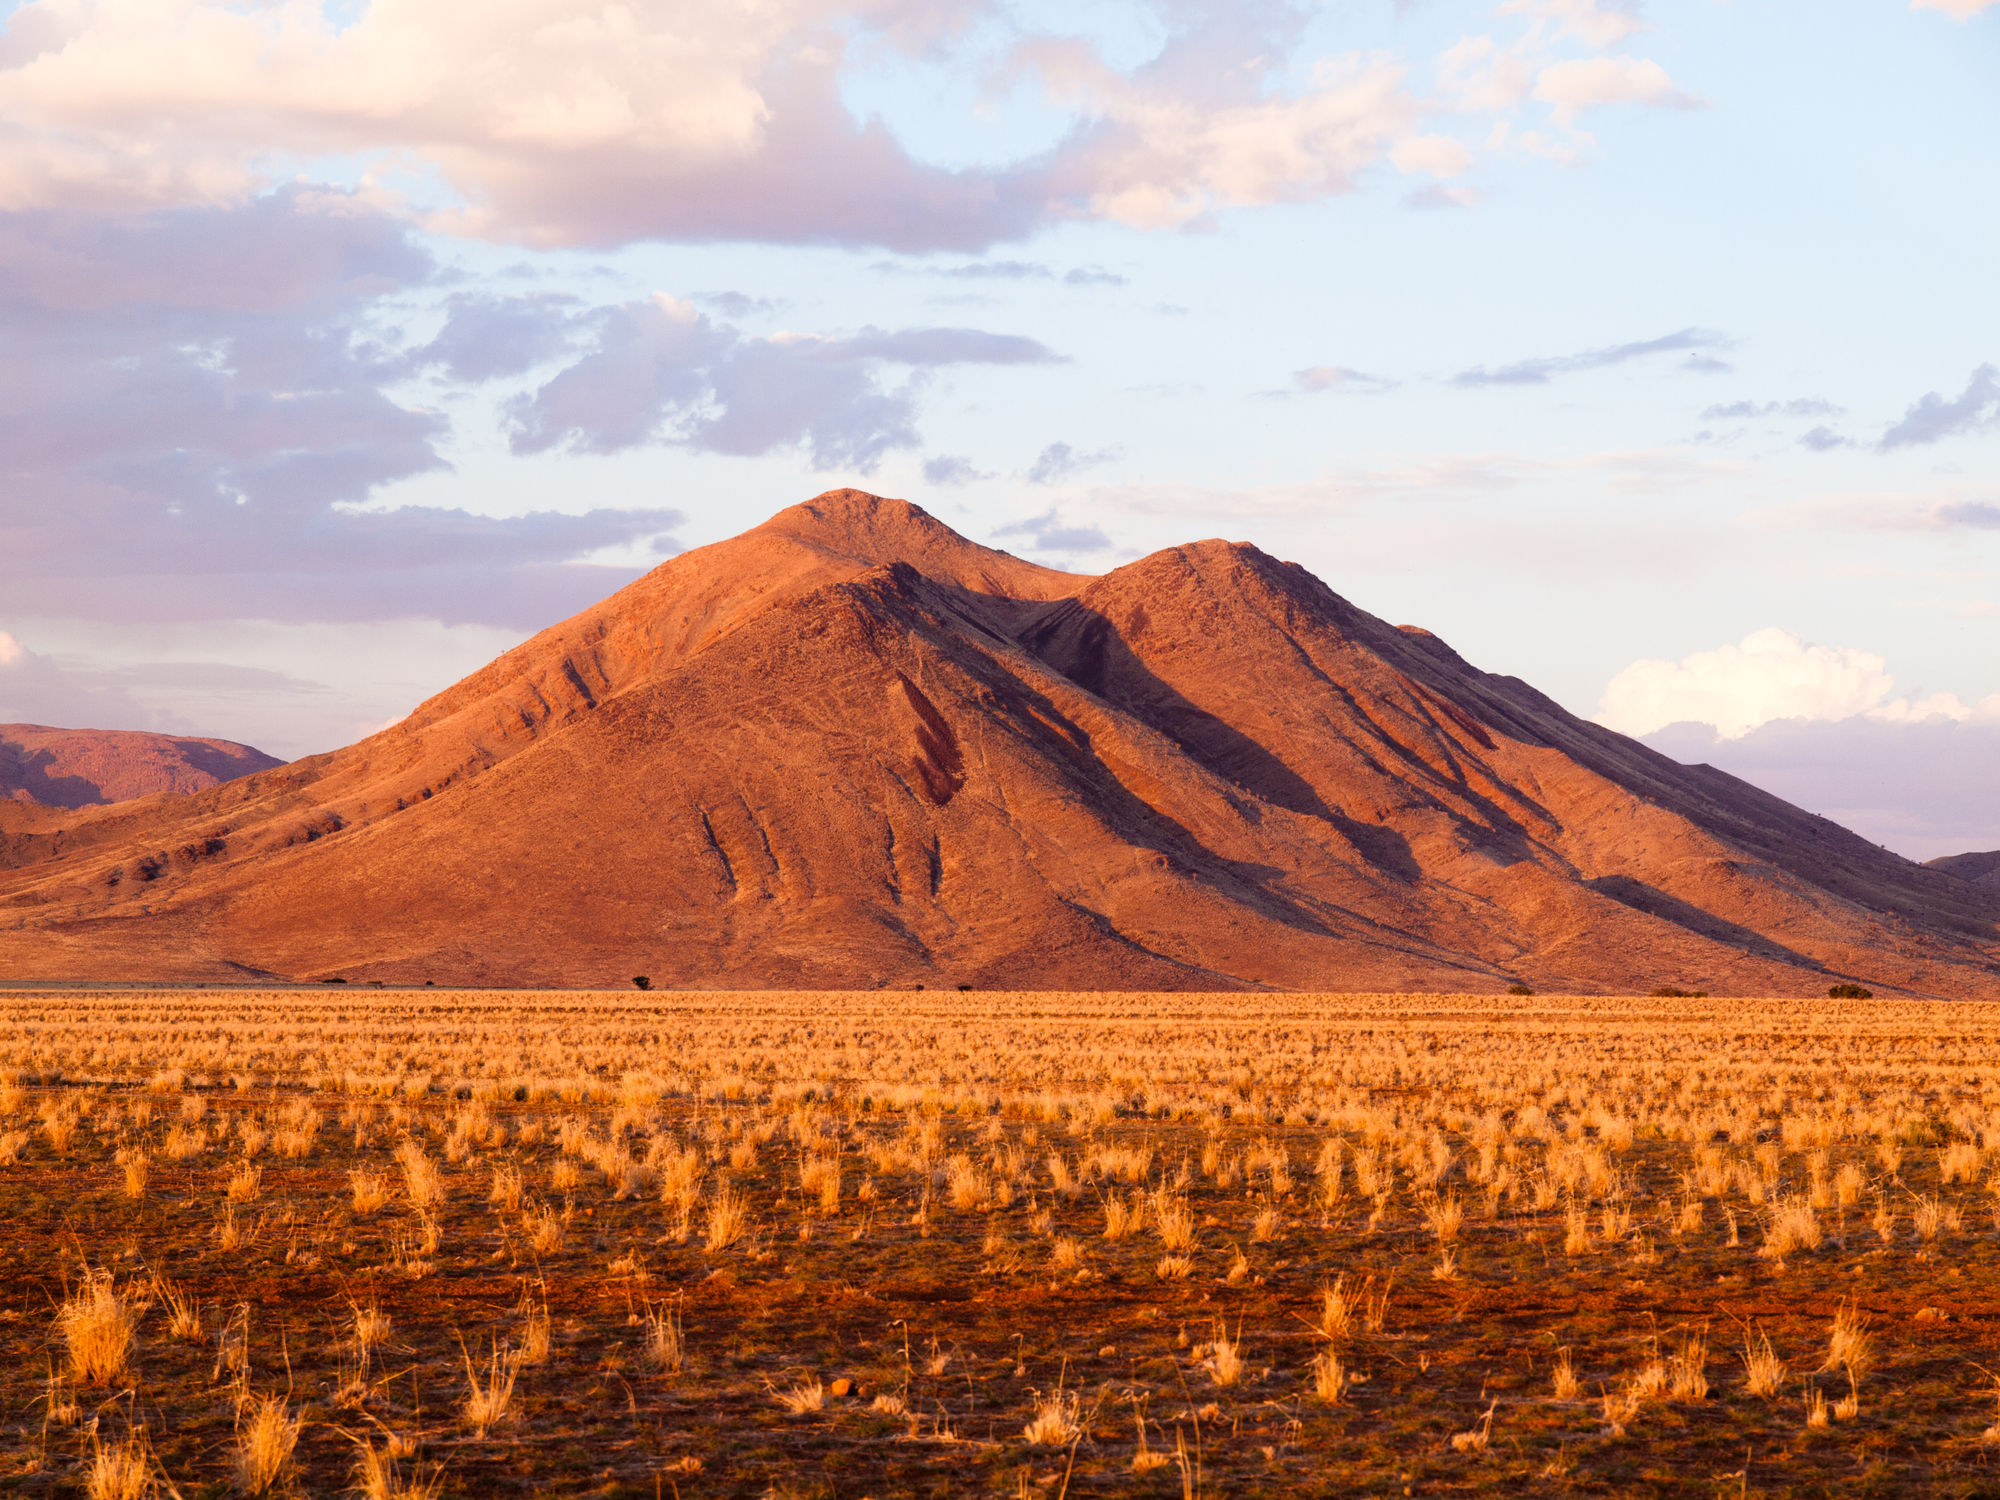 Tiras Mountains in Namibia